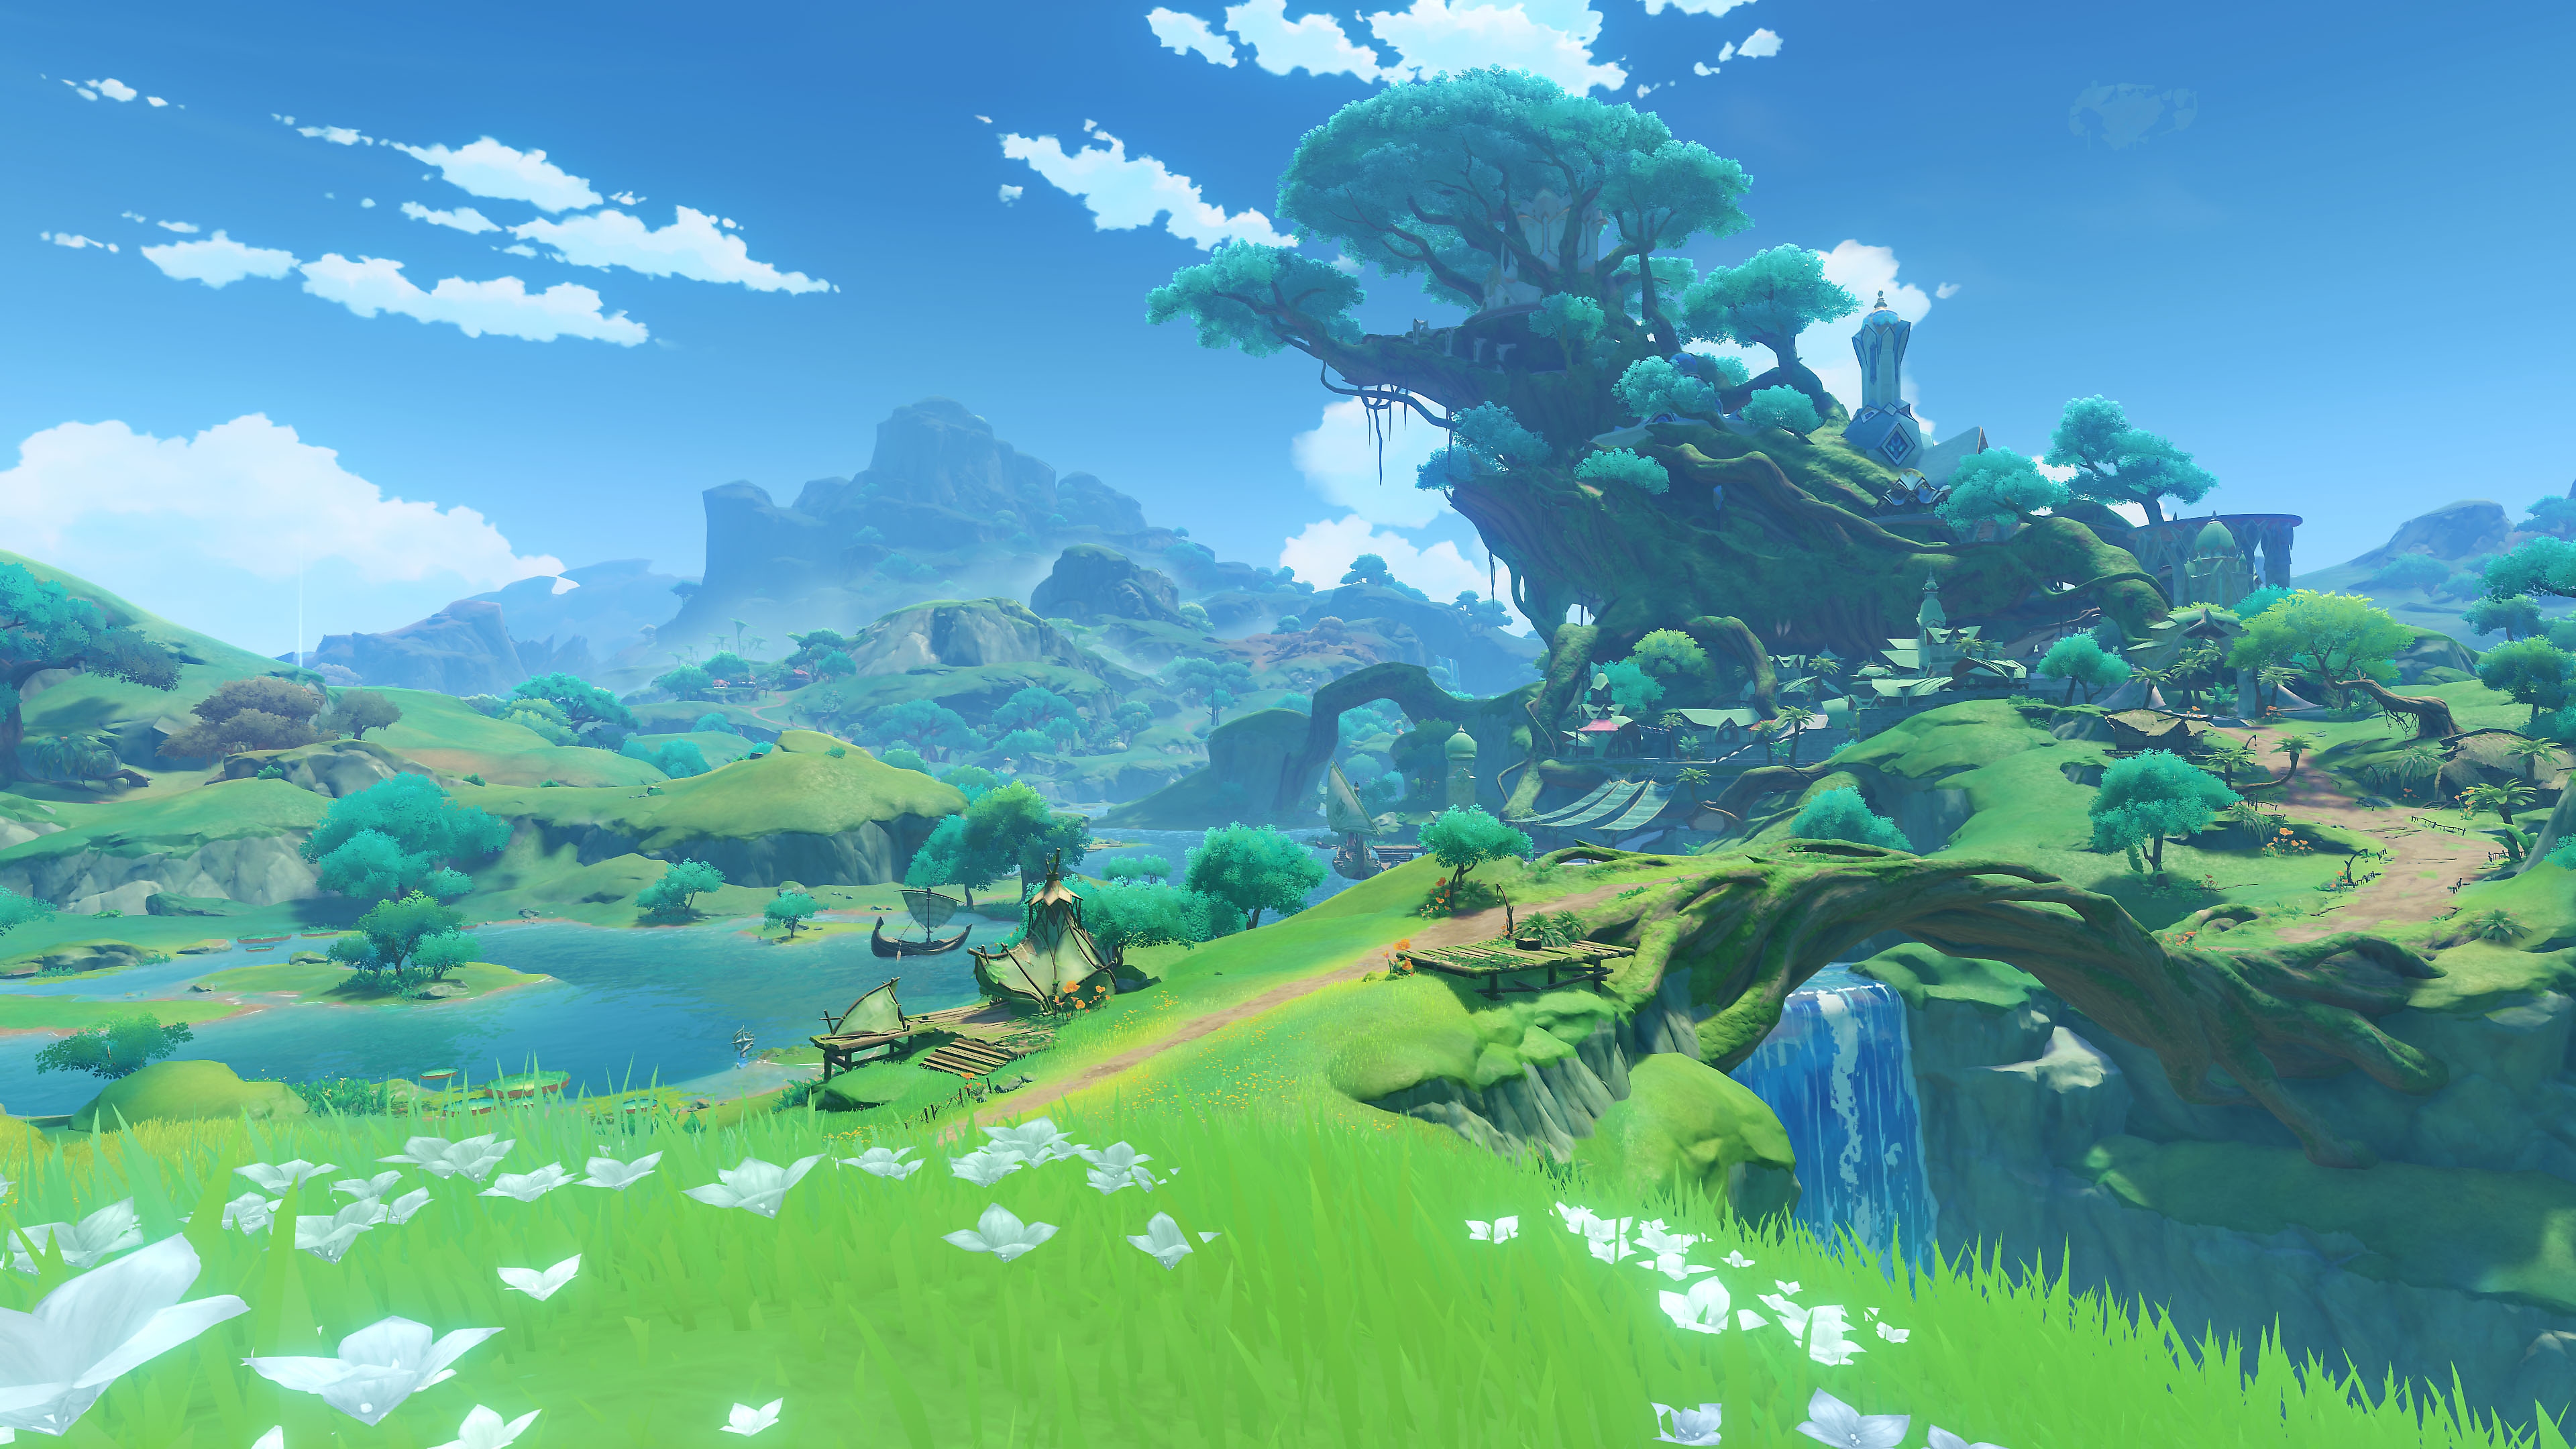 Impacto de GenShin: Captura de pantalla de la actualización 3.0 que muestra un exuberante paisaje verde